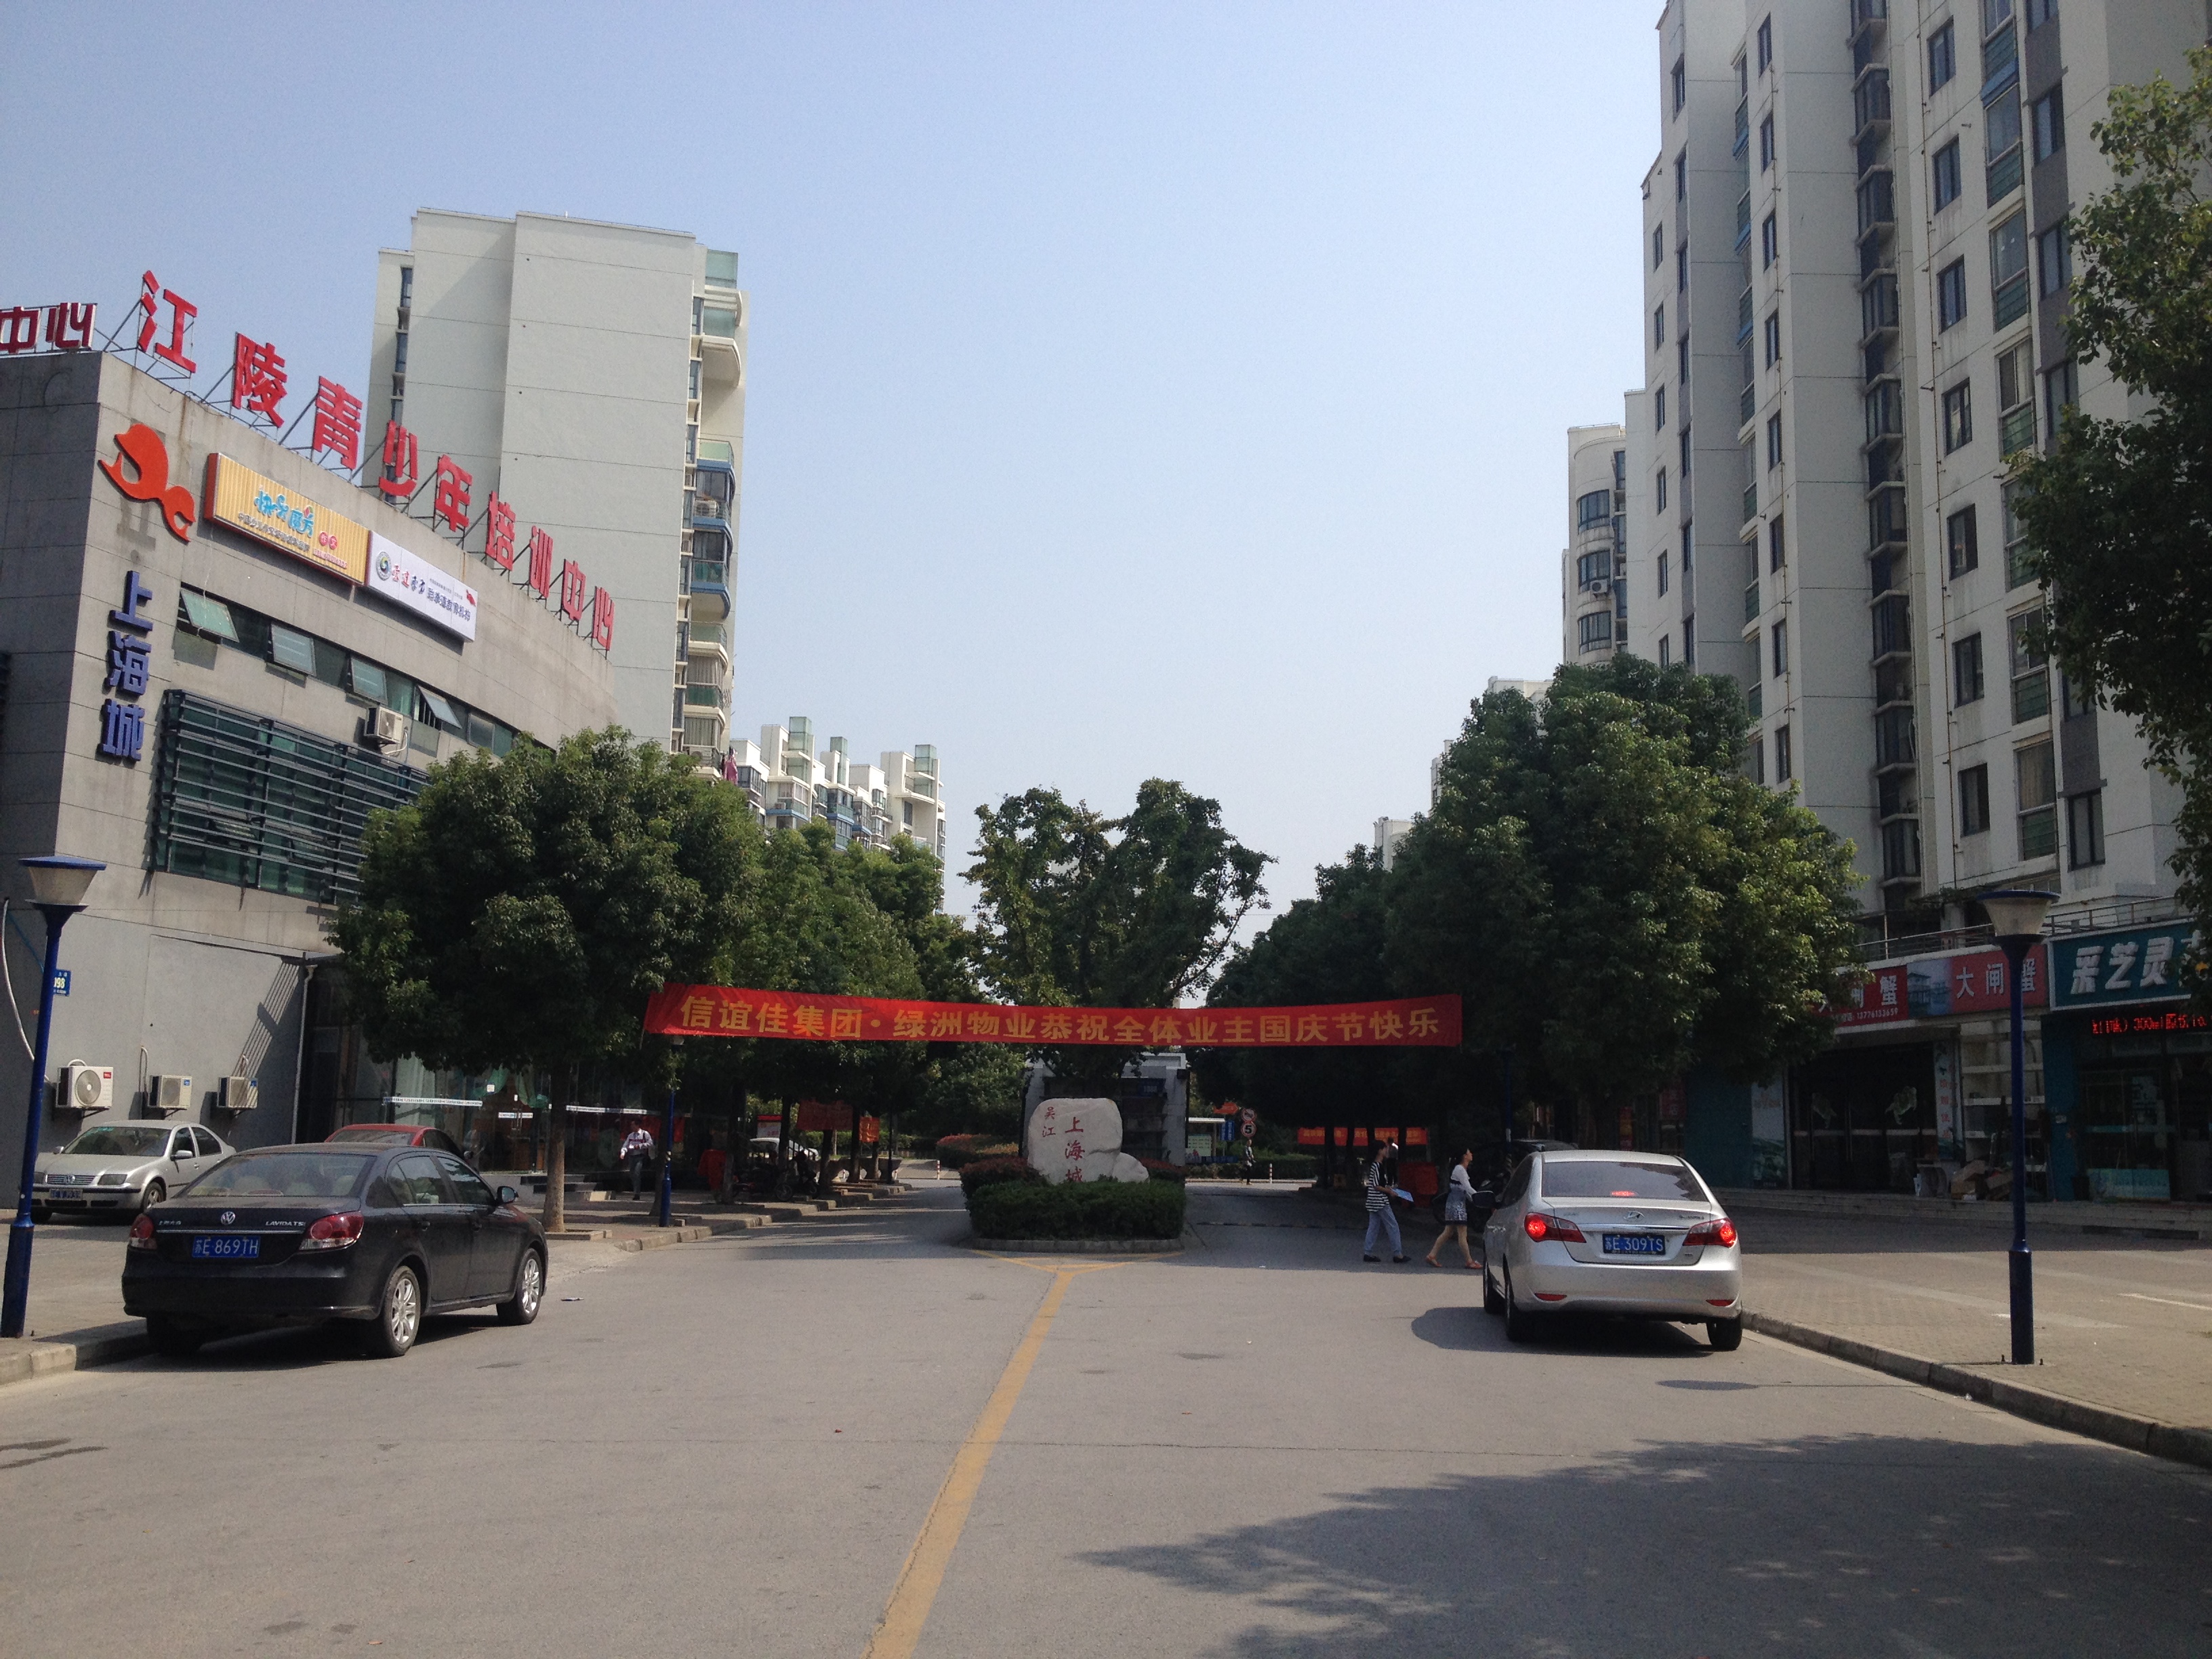 上海城 2室2厅1卫 93平方米 2500元/月出租